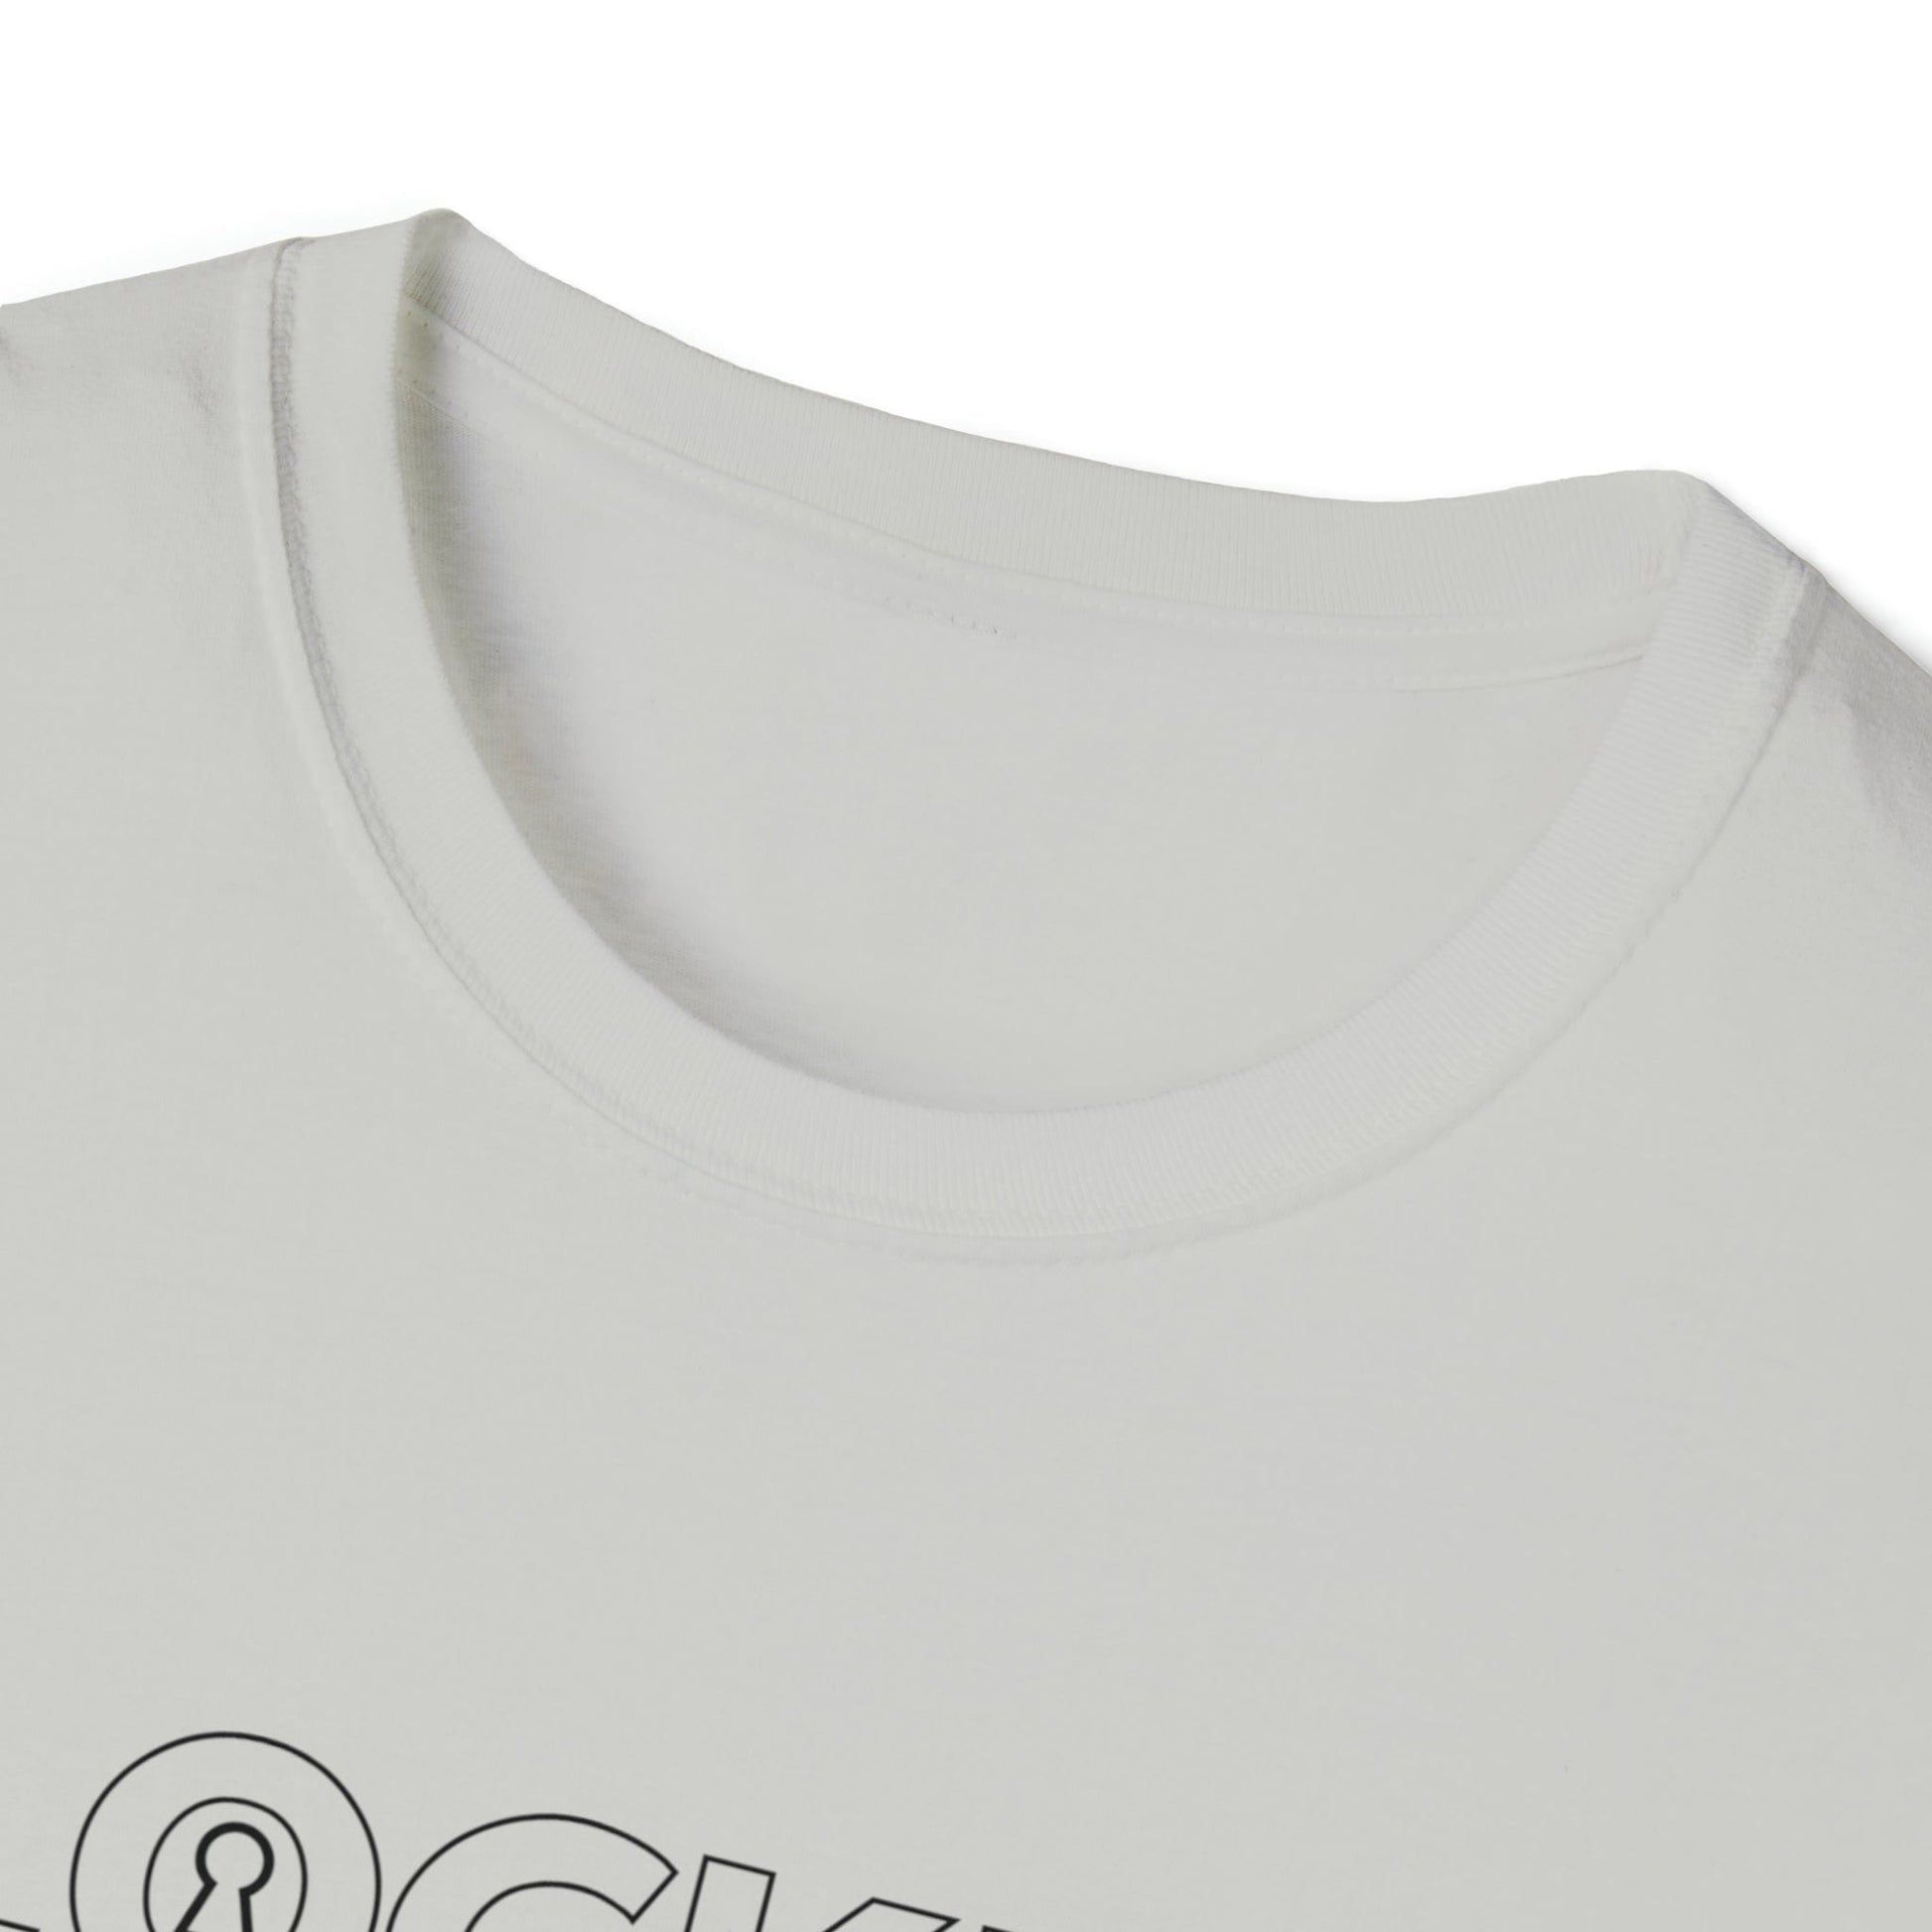 T-Shirt LOCKED Inspo (black text) - Chastity Shirts by LockedBoy Athletics LEATHERDADDY BATOR